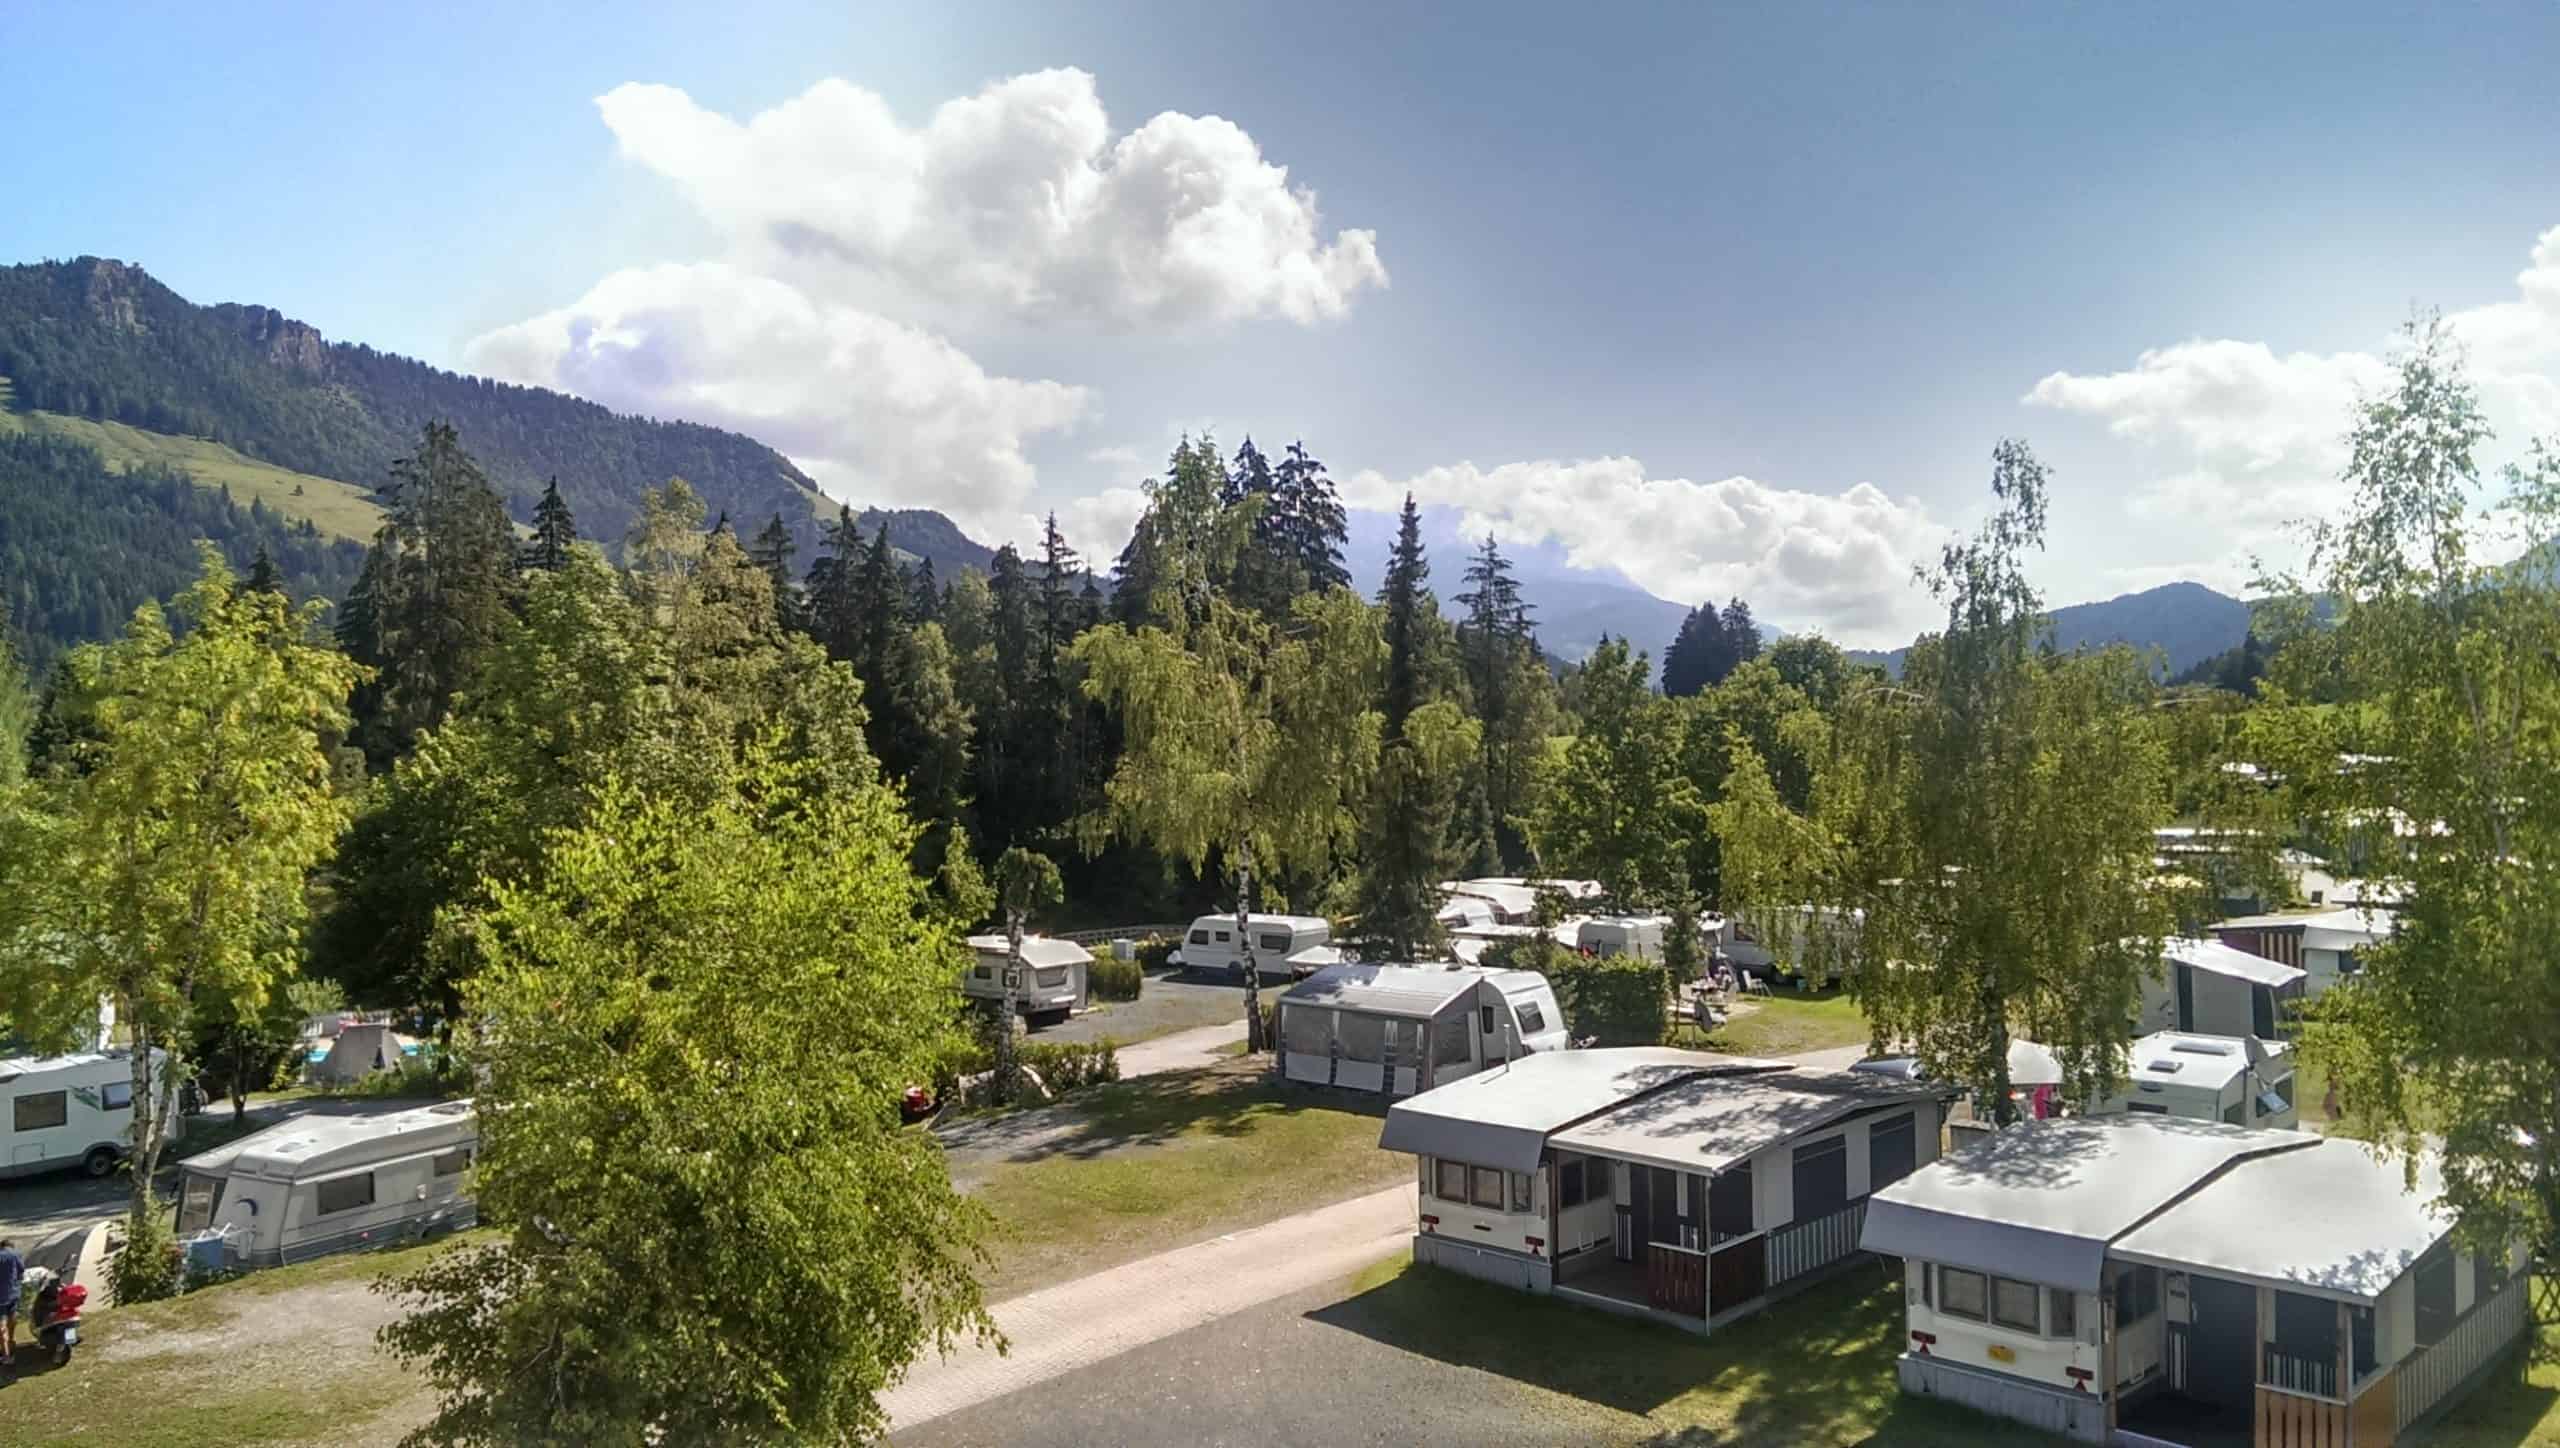 Auf dem Bild wird ein Campingplatz gezeigt. Man sieht Wohnwagen in der Natur